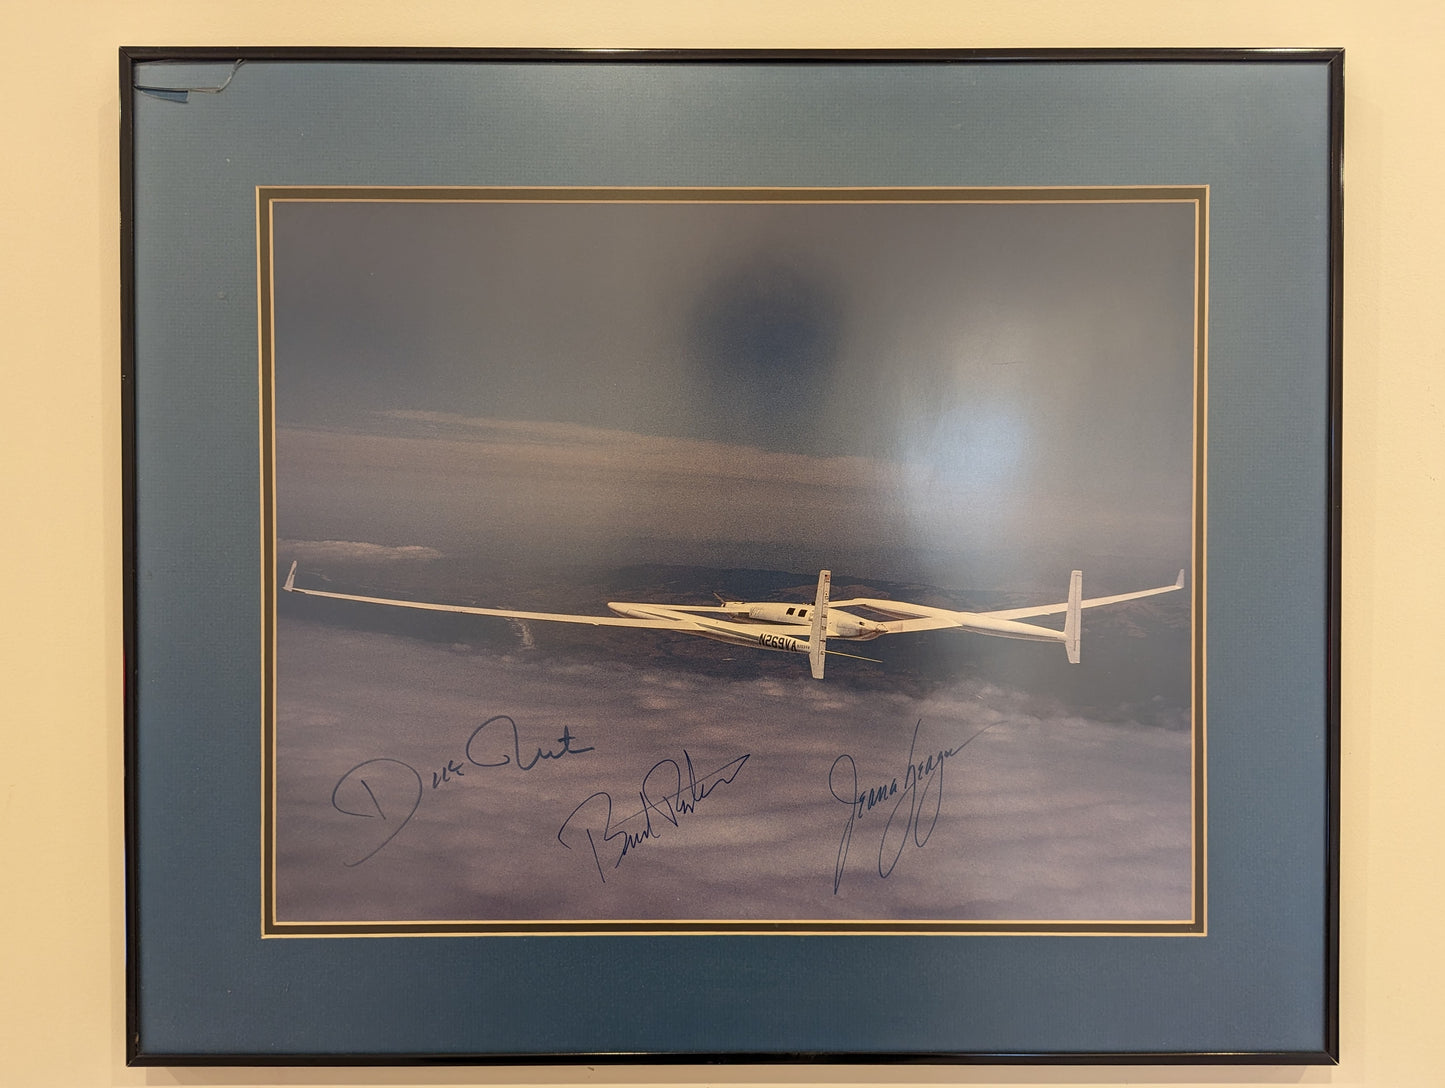 Rutan Voyager - Autographed Photo (1986)